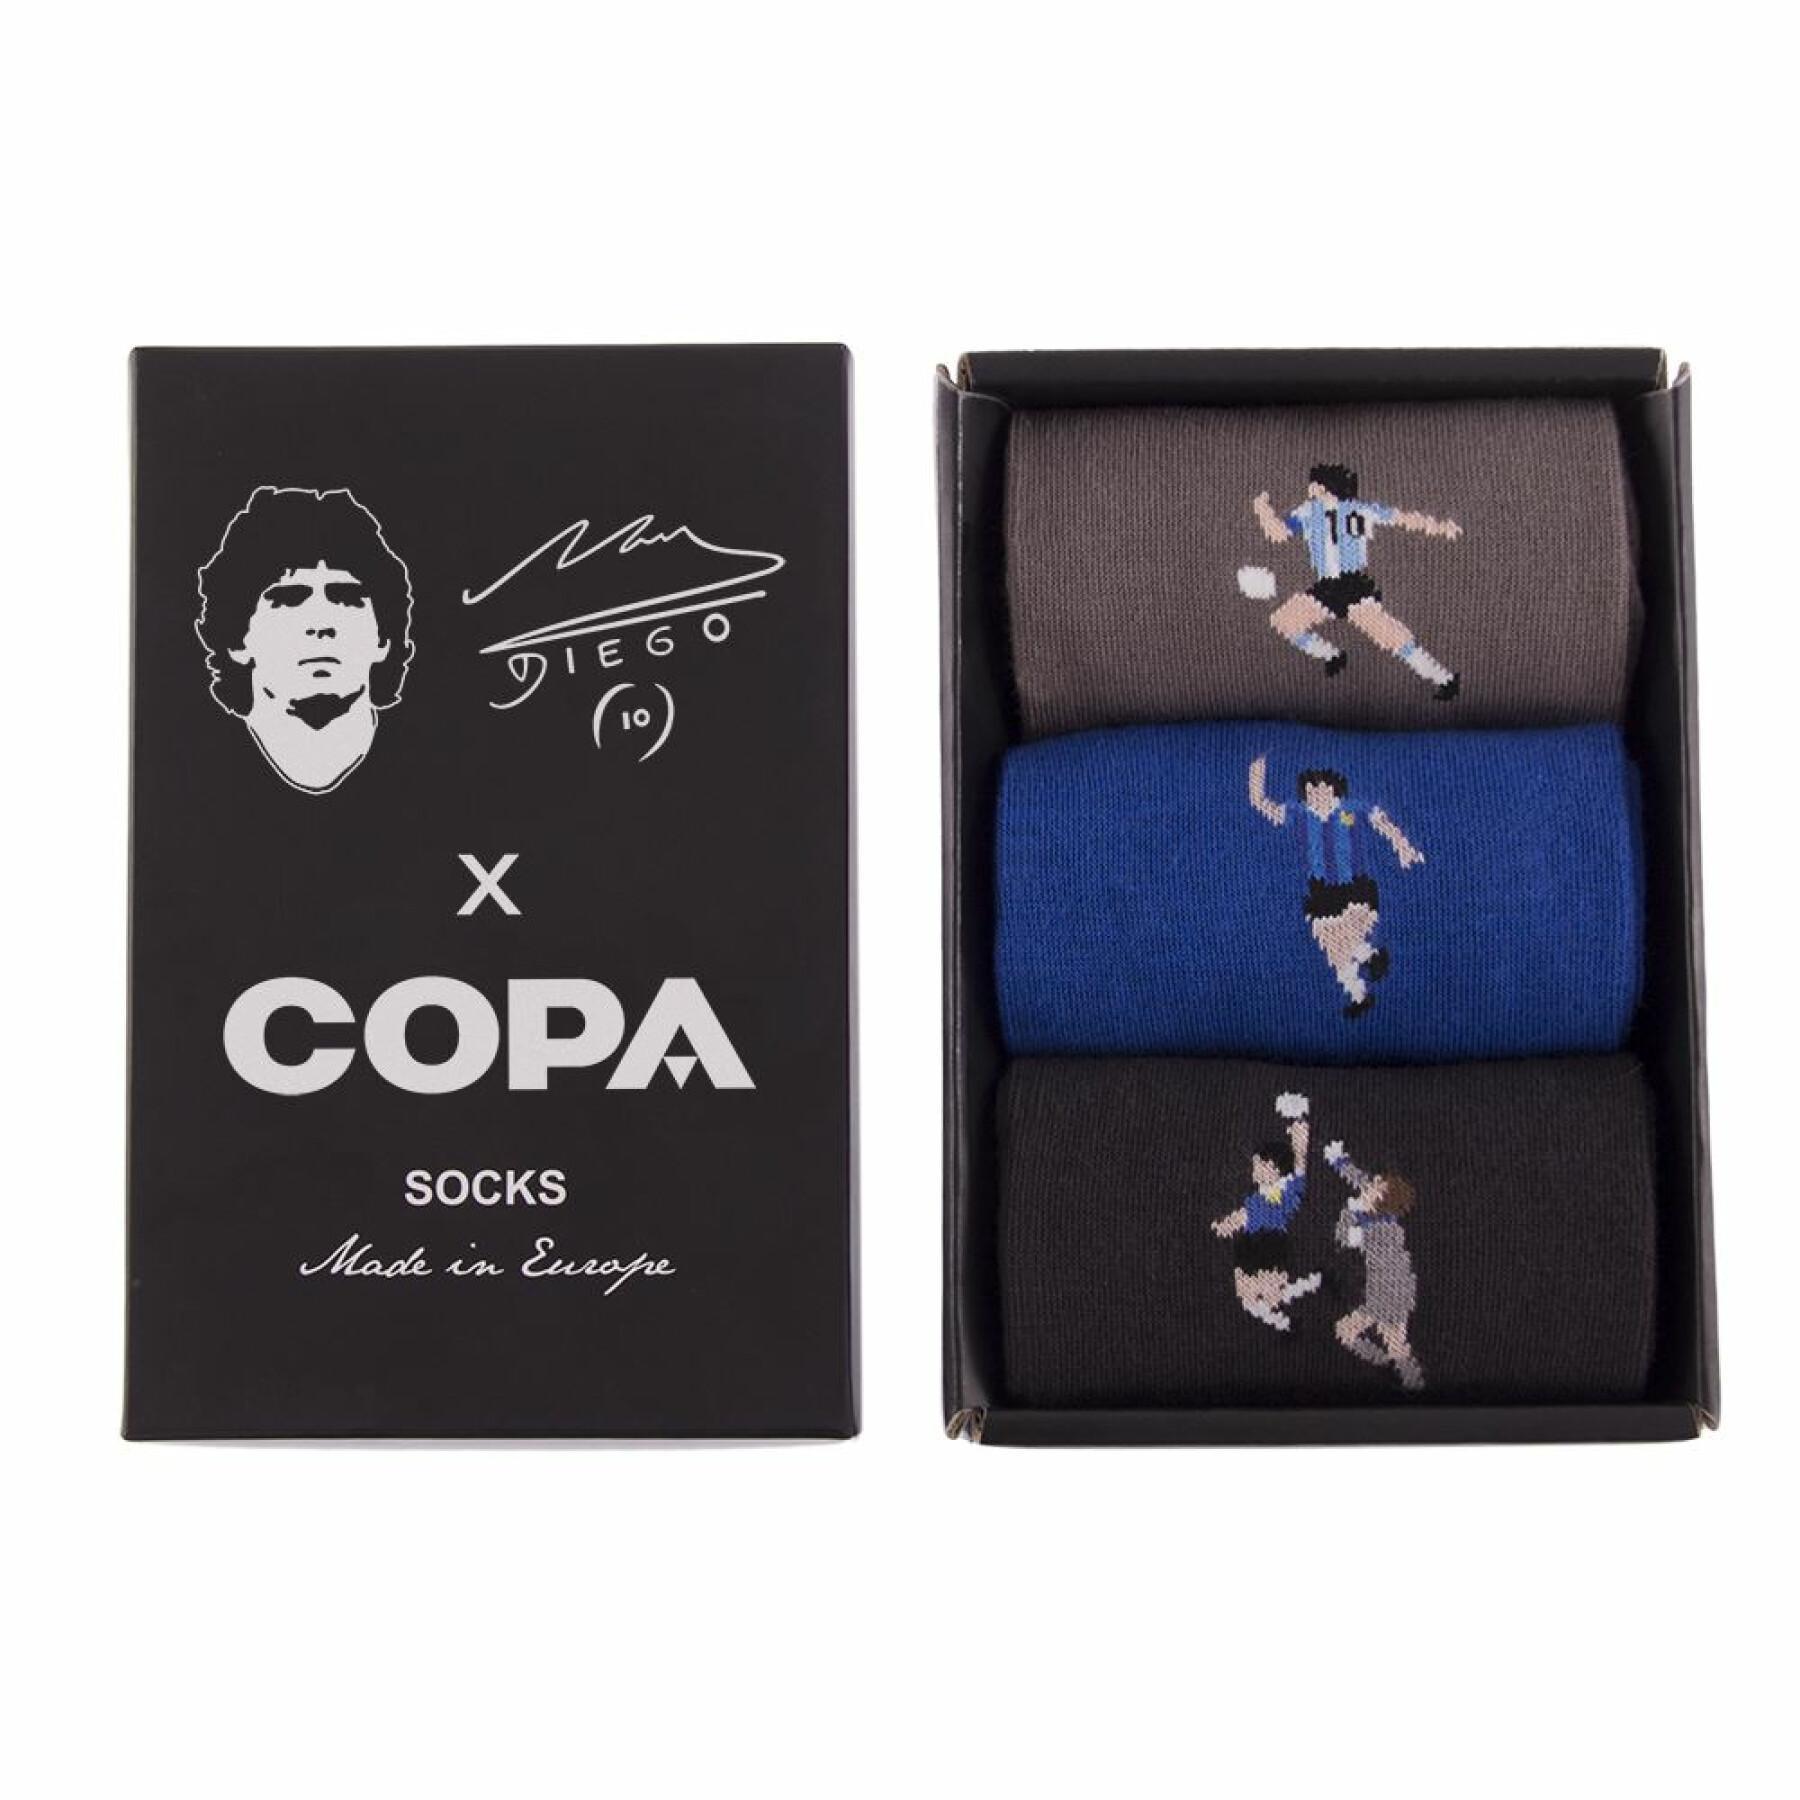 Conjunto de meias Copa Argentine Maradona (3P)